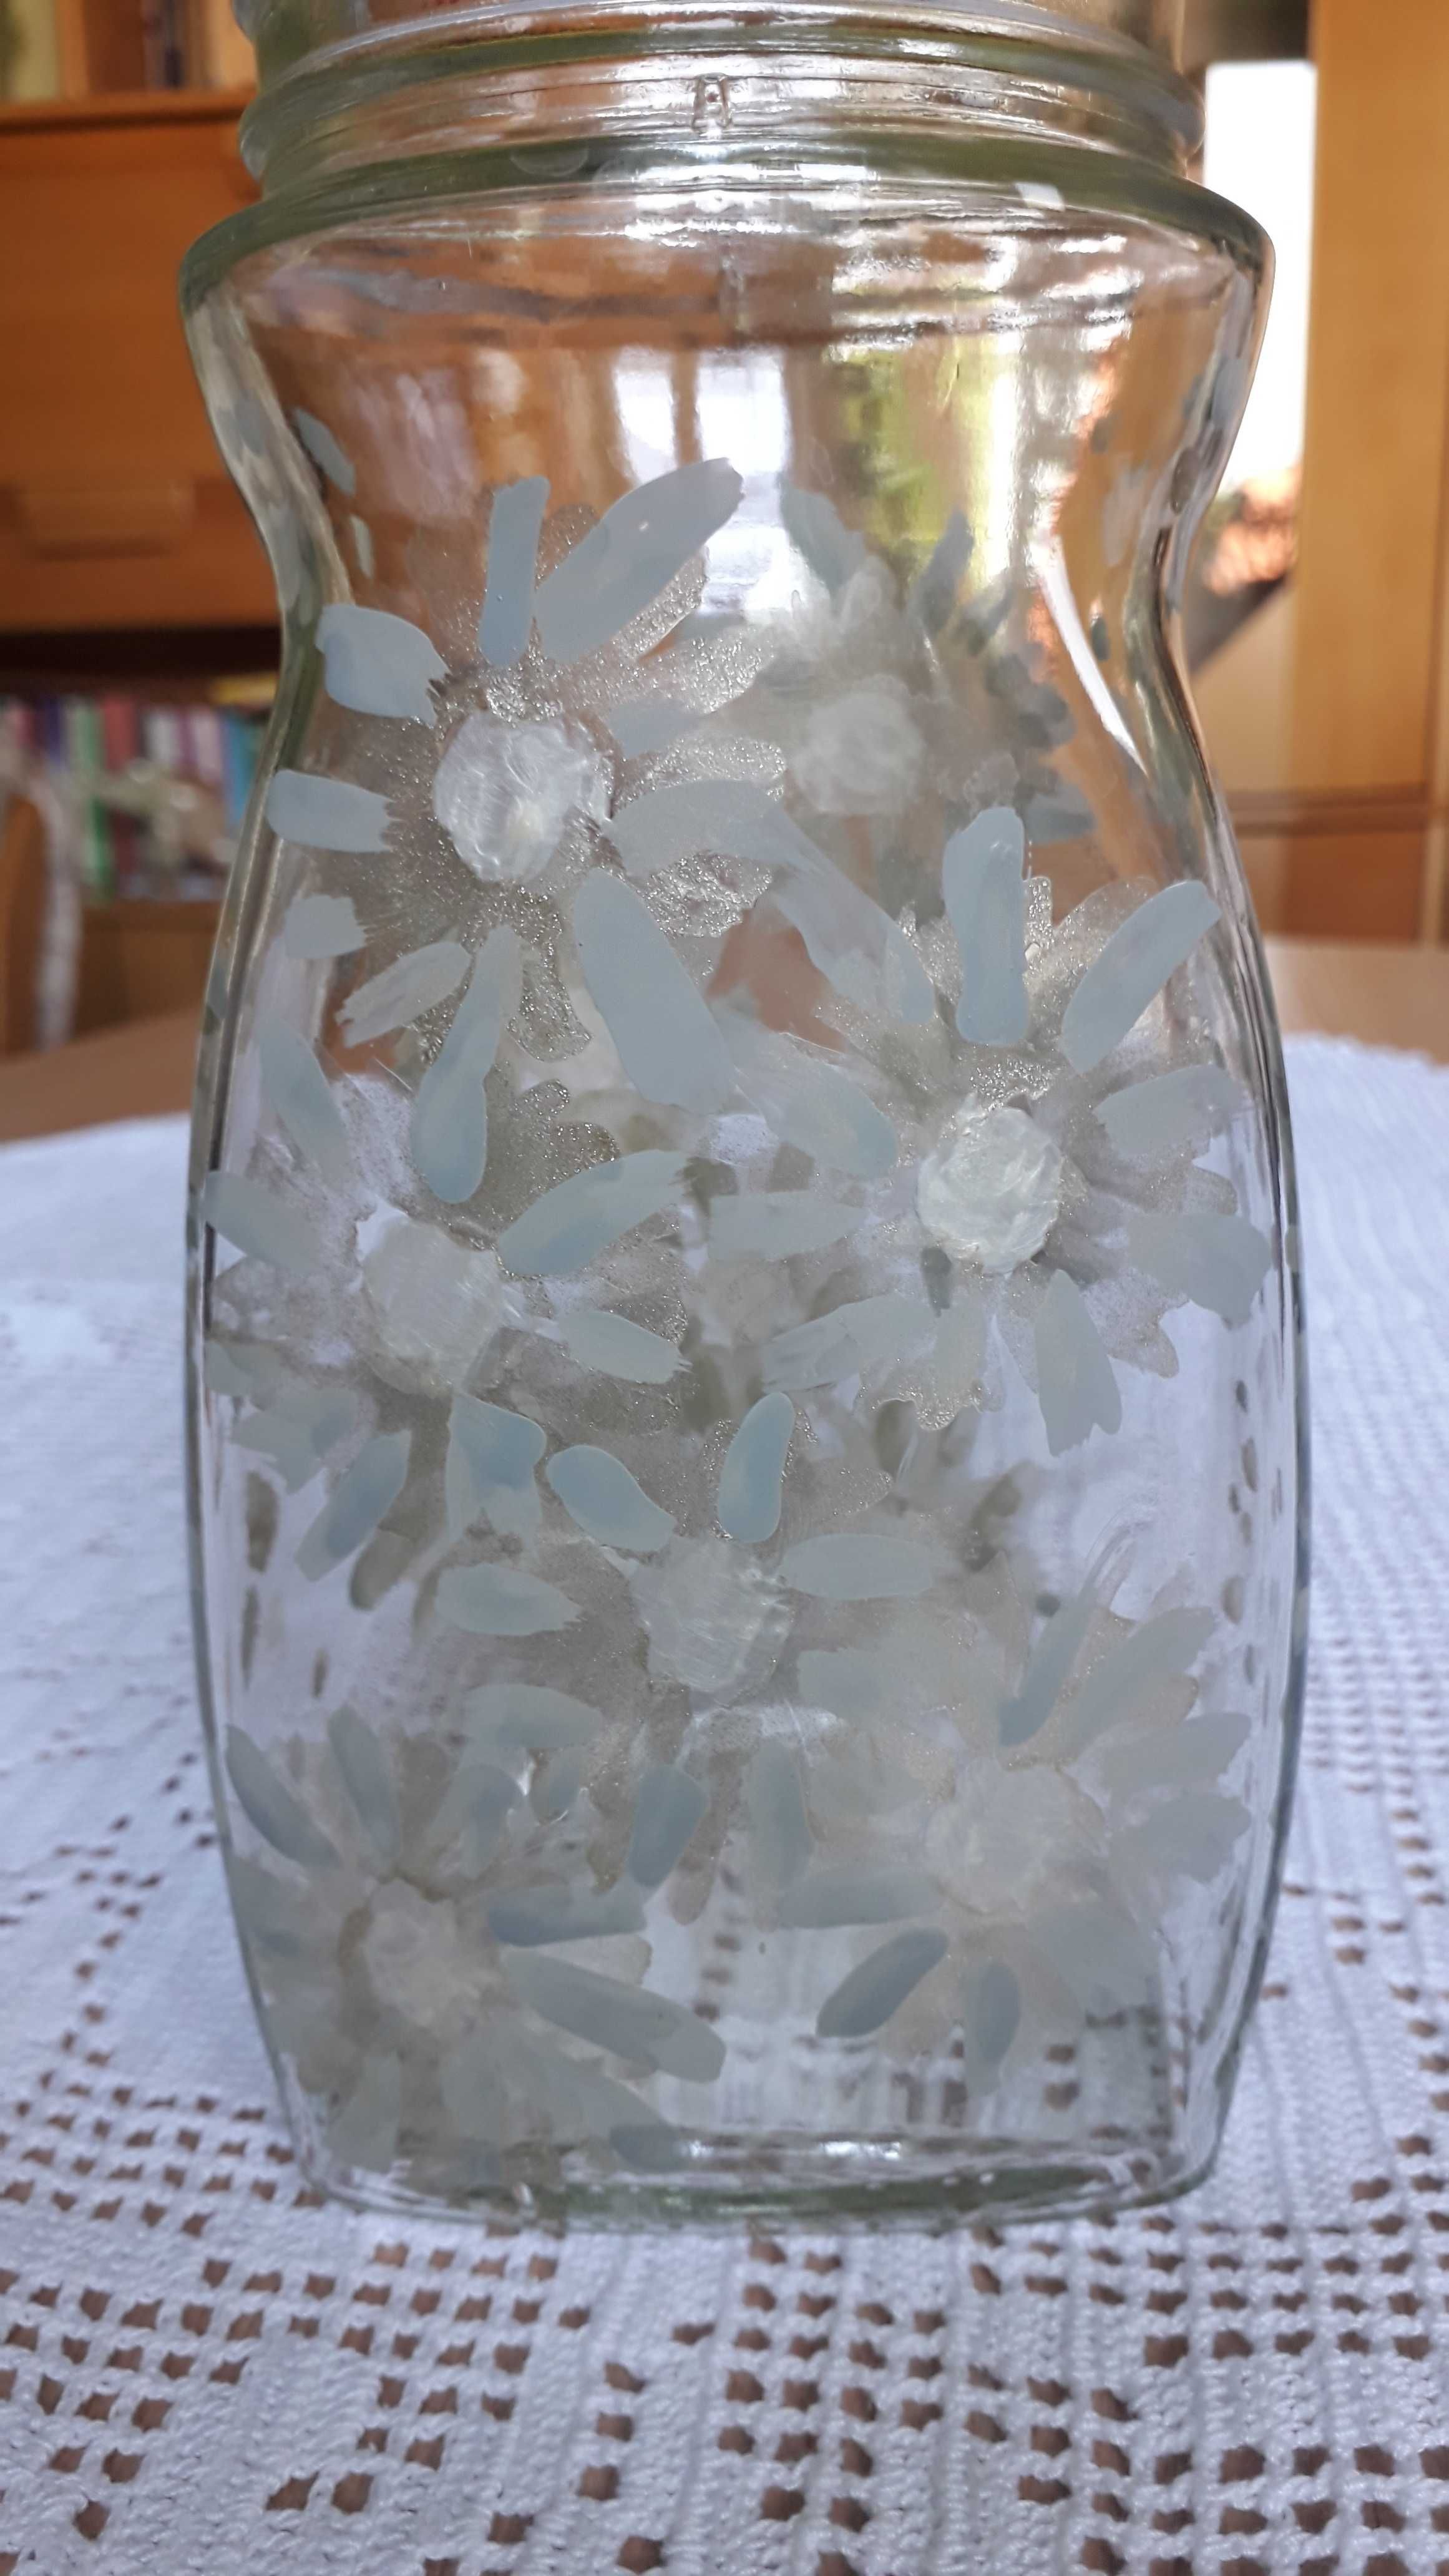 Słój słoik pojemnik szklany ręcznie malowany w delikatne kwiaty